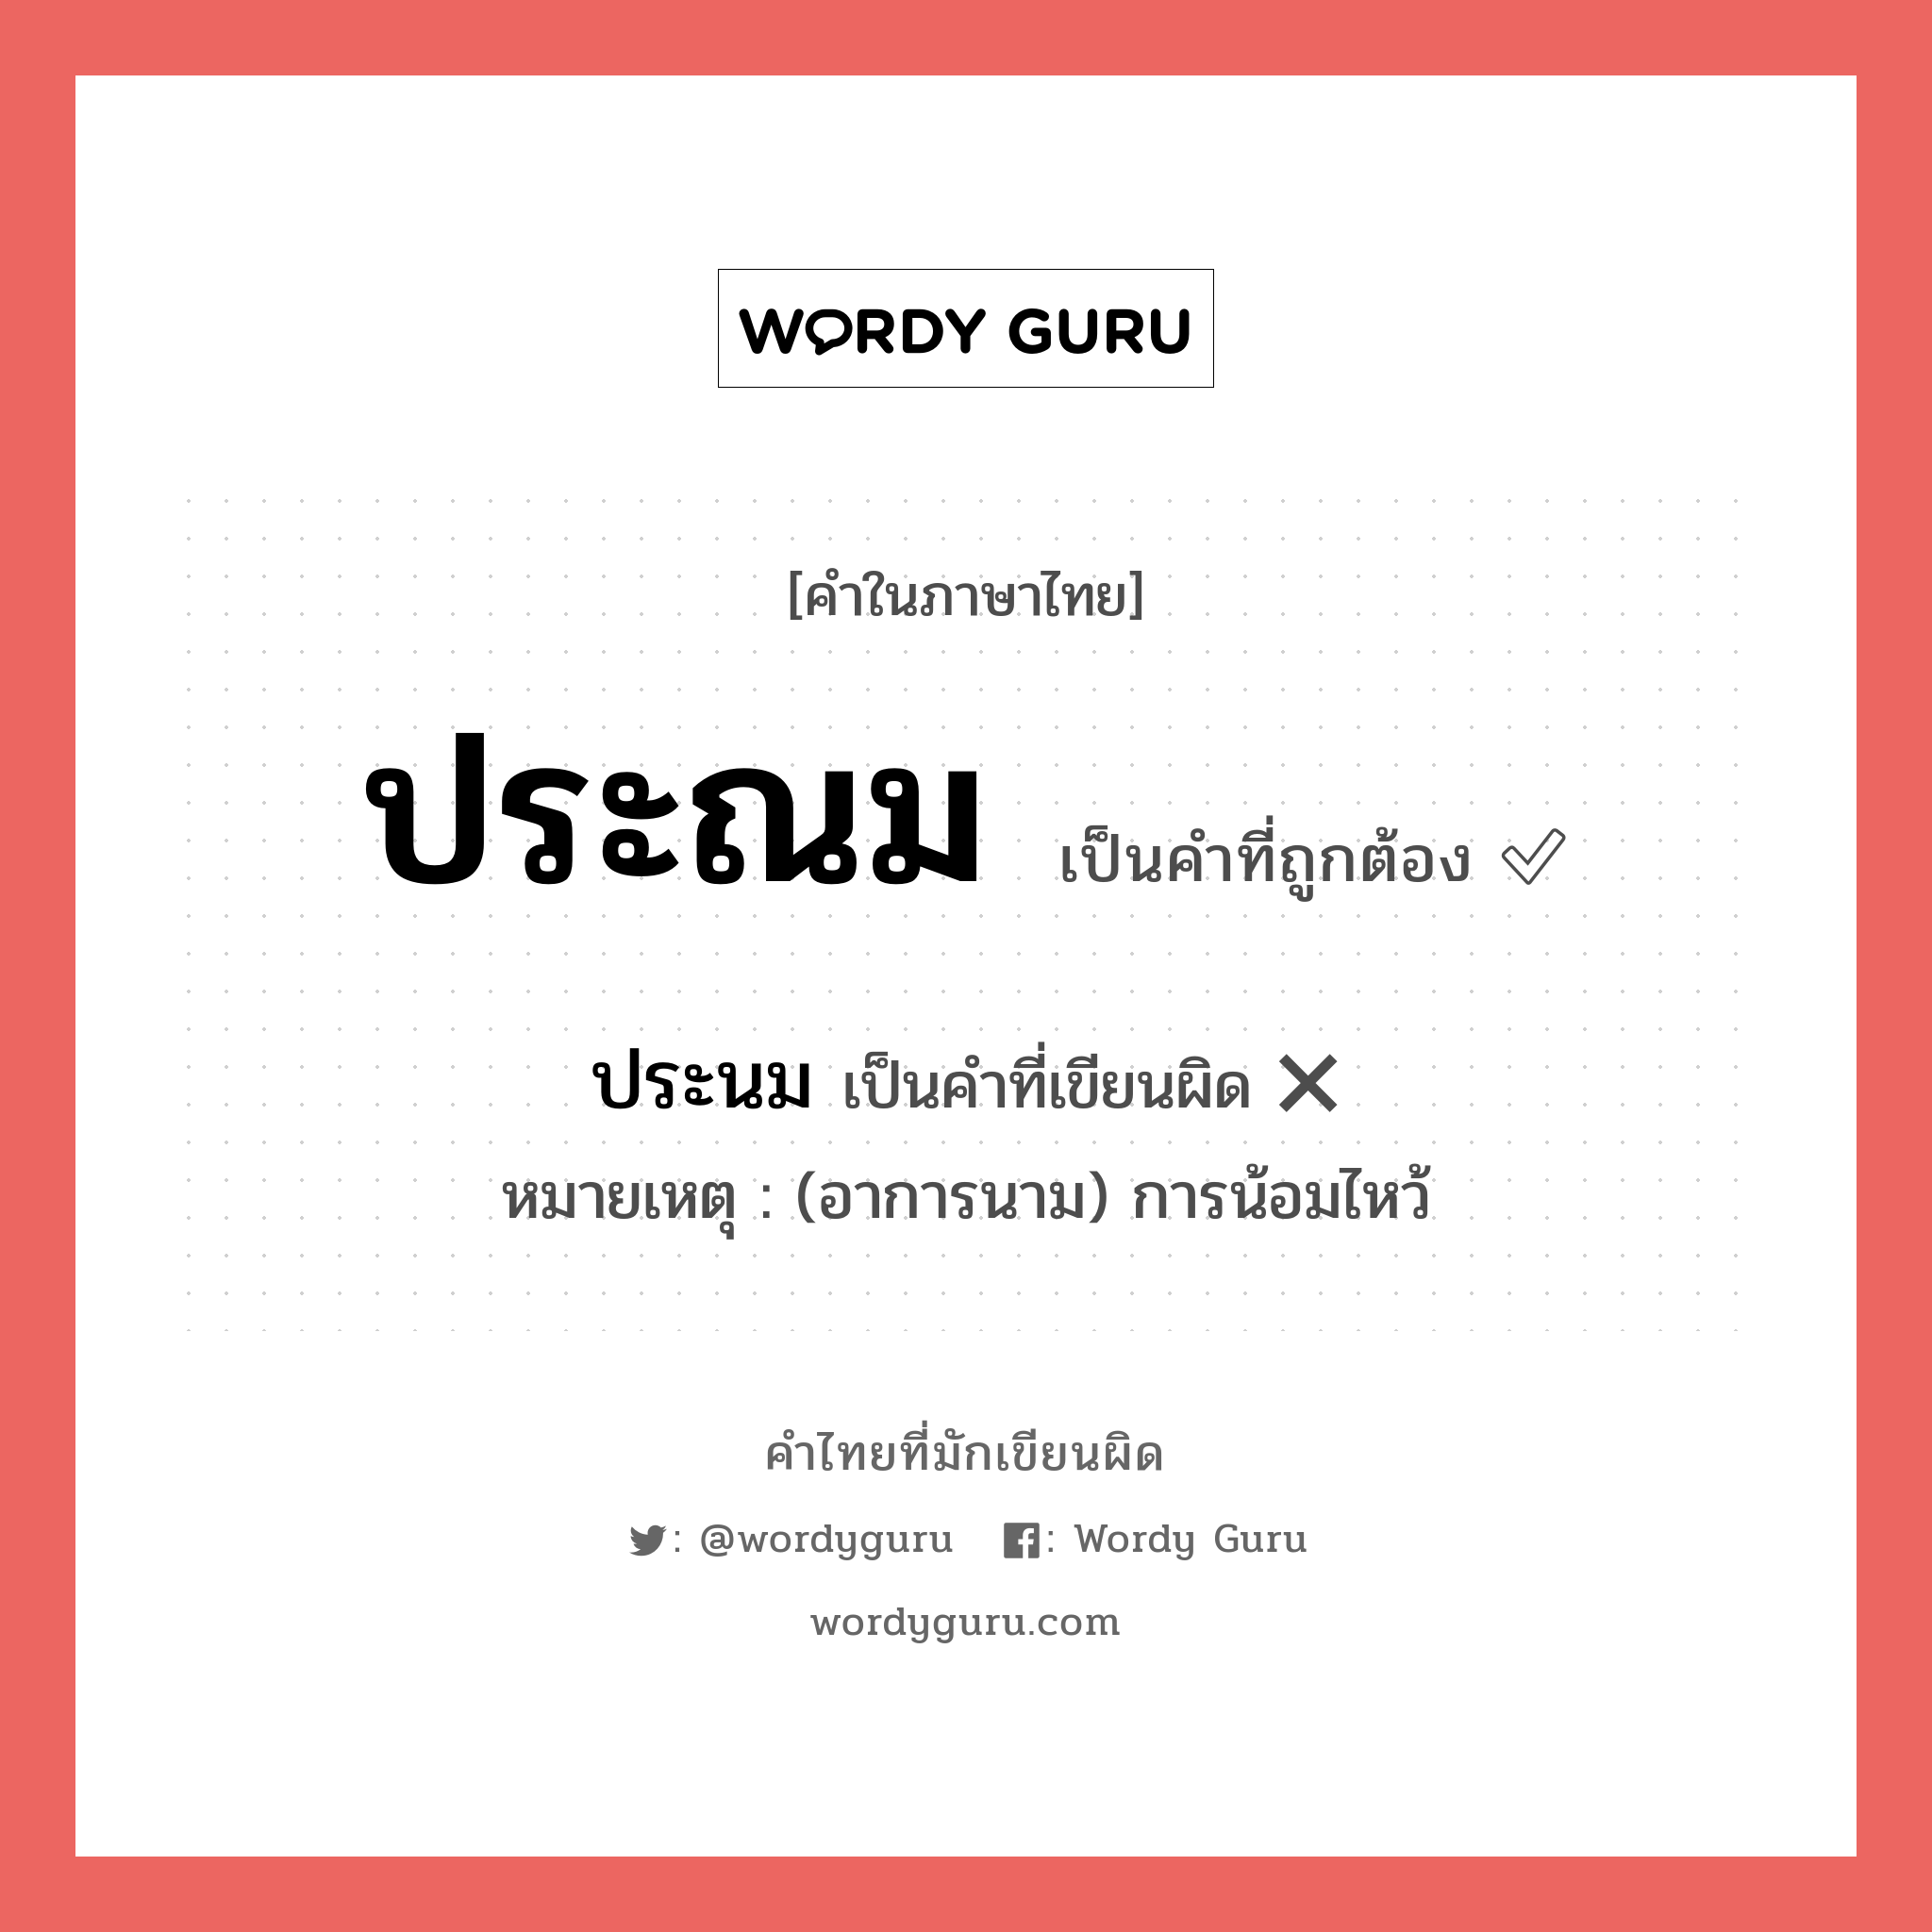 ประนม หรือ ประณม คำไหนเขียนถูก?, คำในภาษาไทยที่มักเขียนผิด ประนม คำที่ผิด ❌ ประณม หมายเหตุ (อาการนาม) การน้อมไหว้